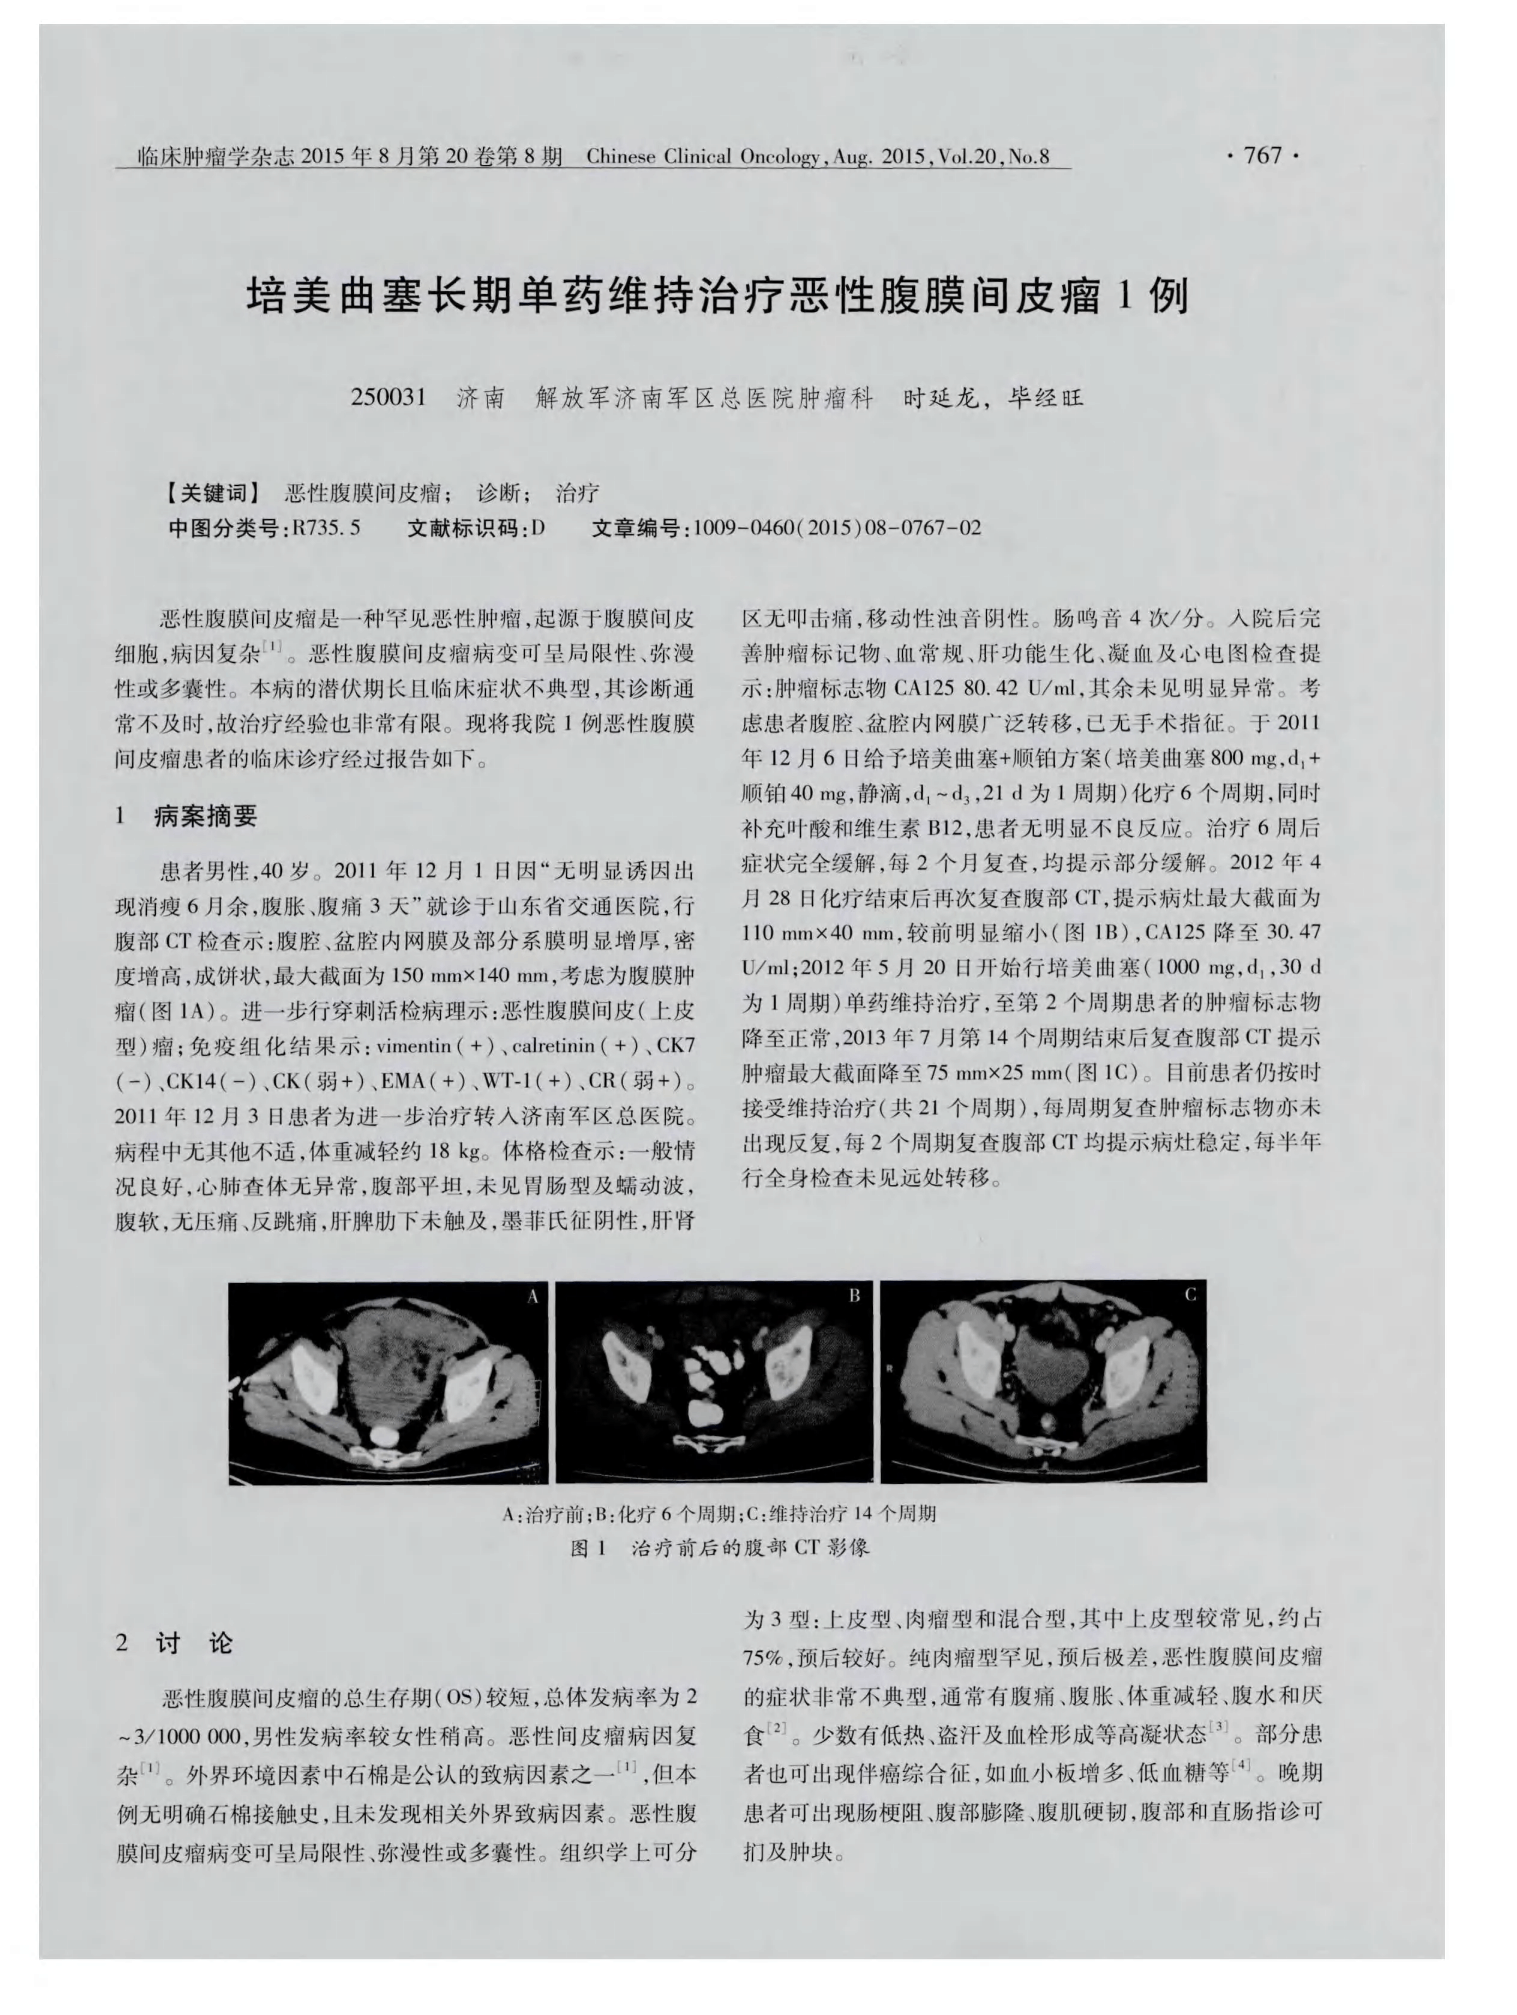 培美曲塞二钠临床实践指南（中国版）——培美曲塞的作用机制